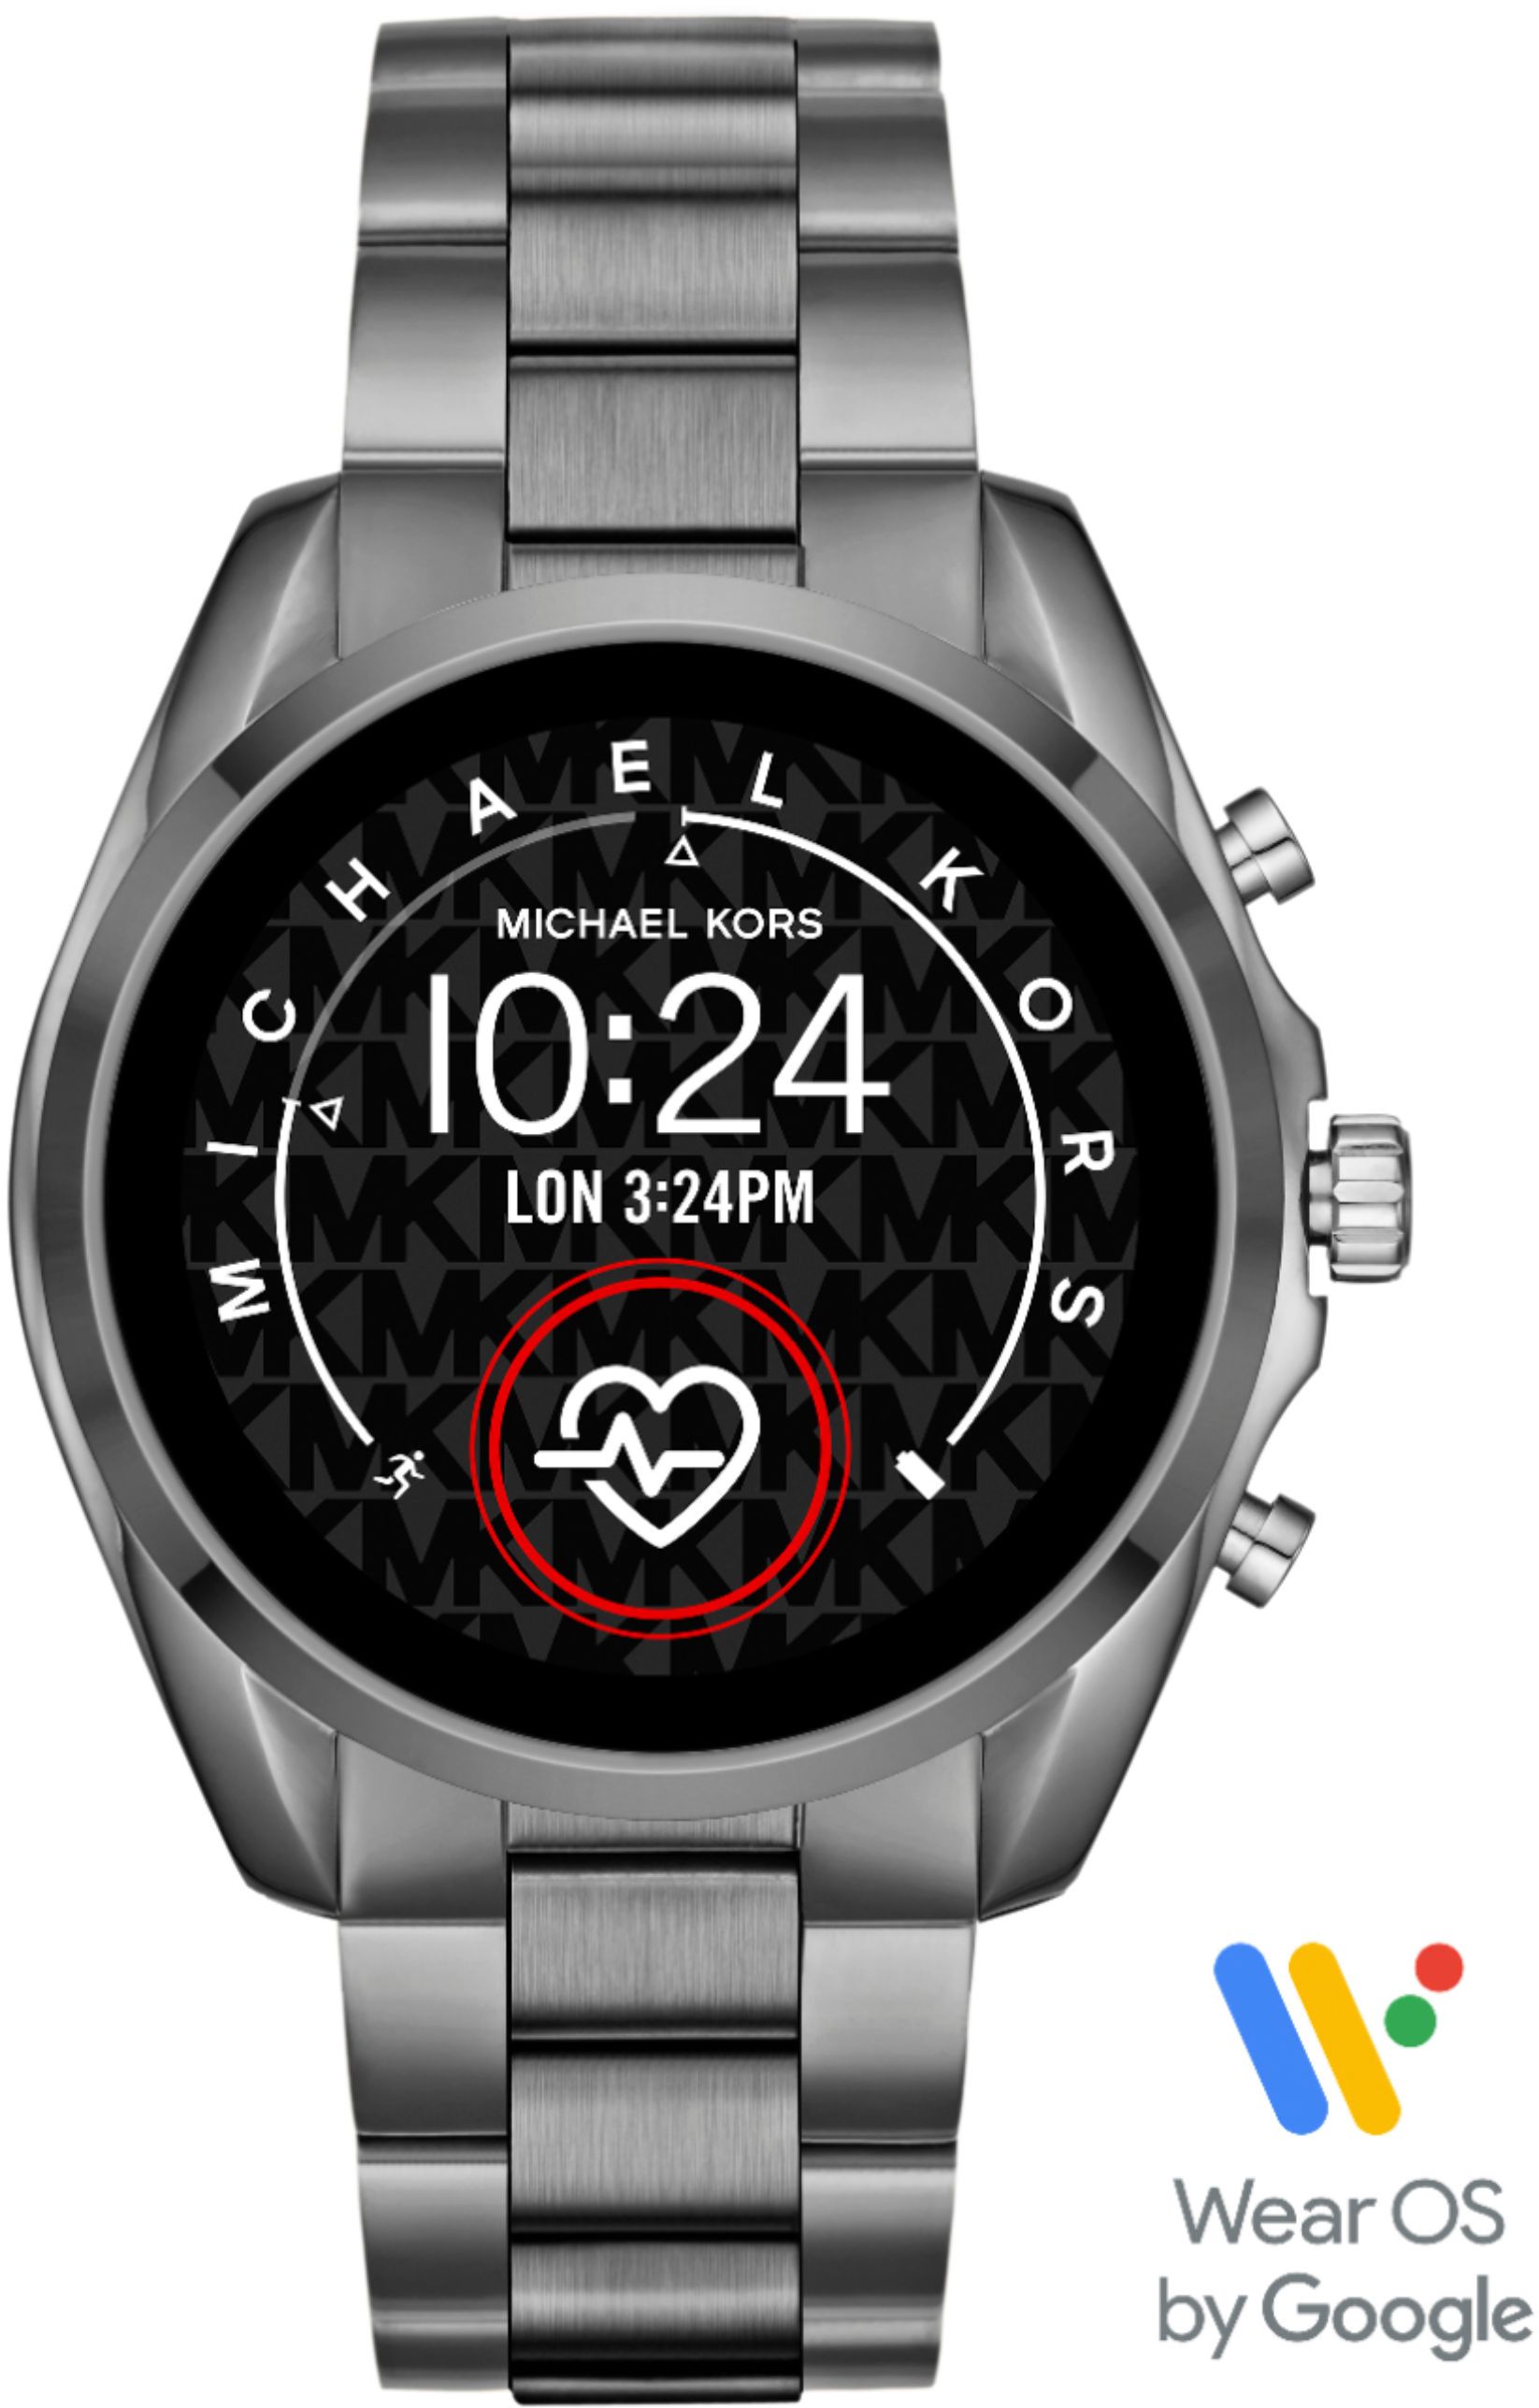 smartwatch michael kors best buy